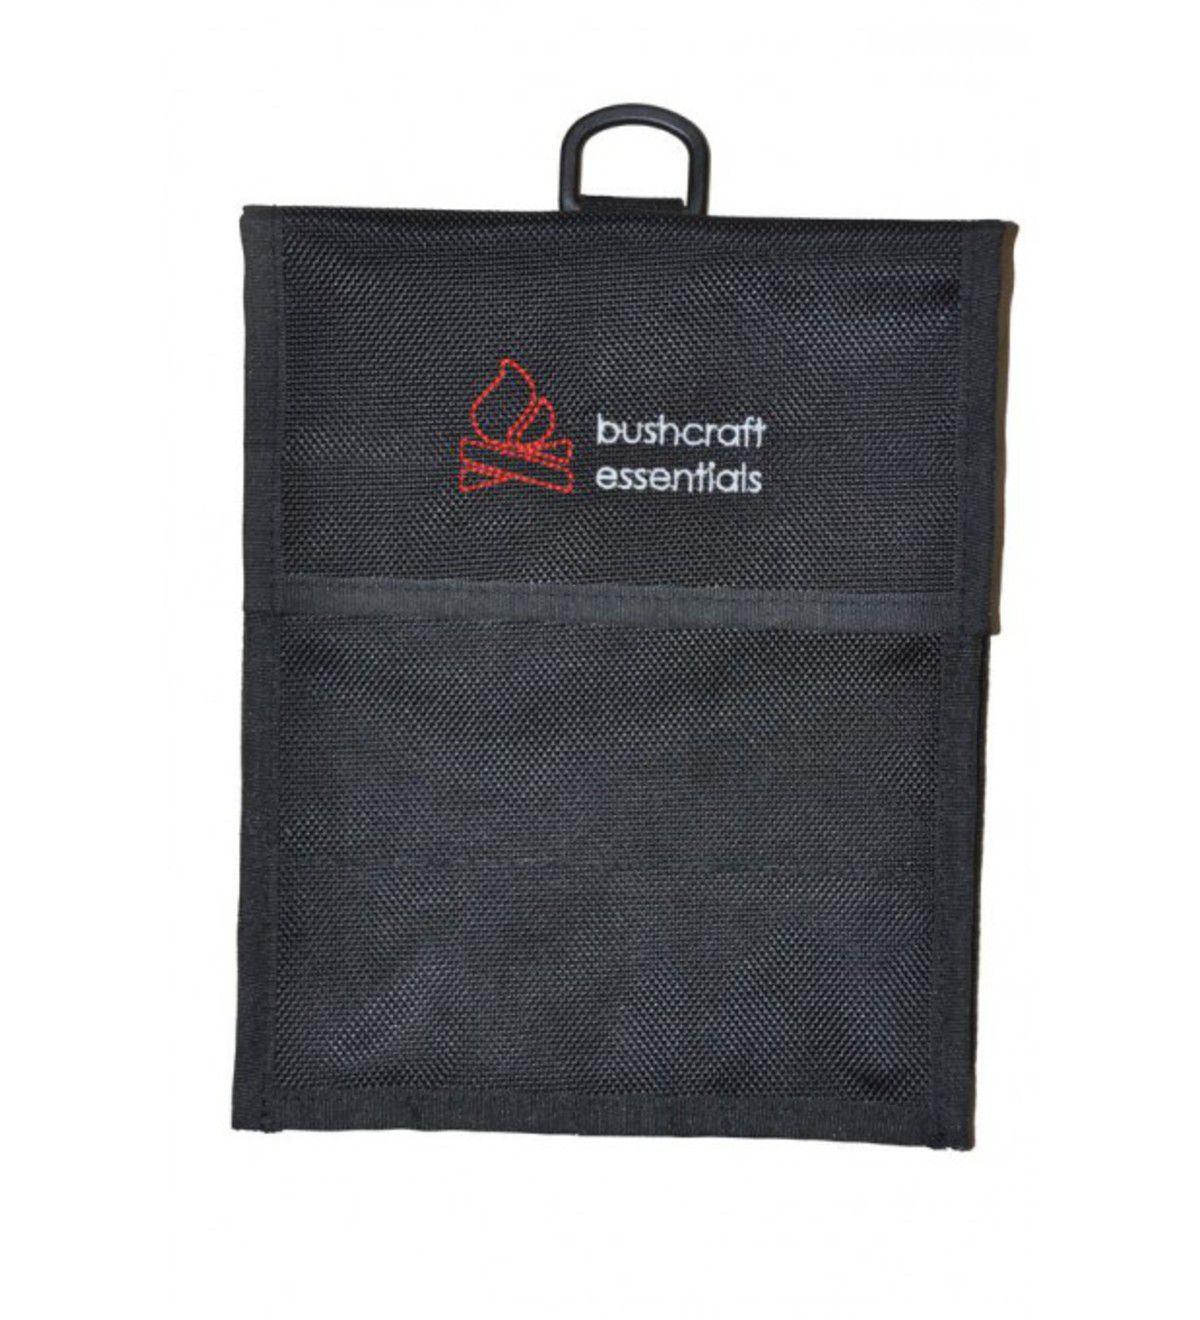 Bushcraft Essentials Heavy duty bag Bushbox